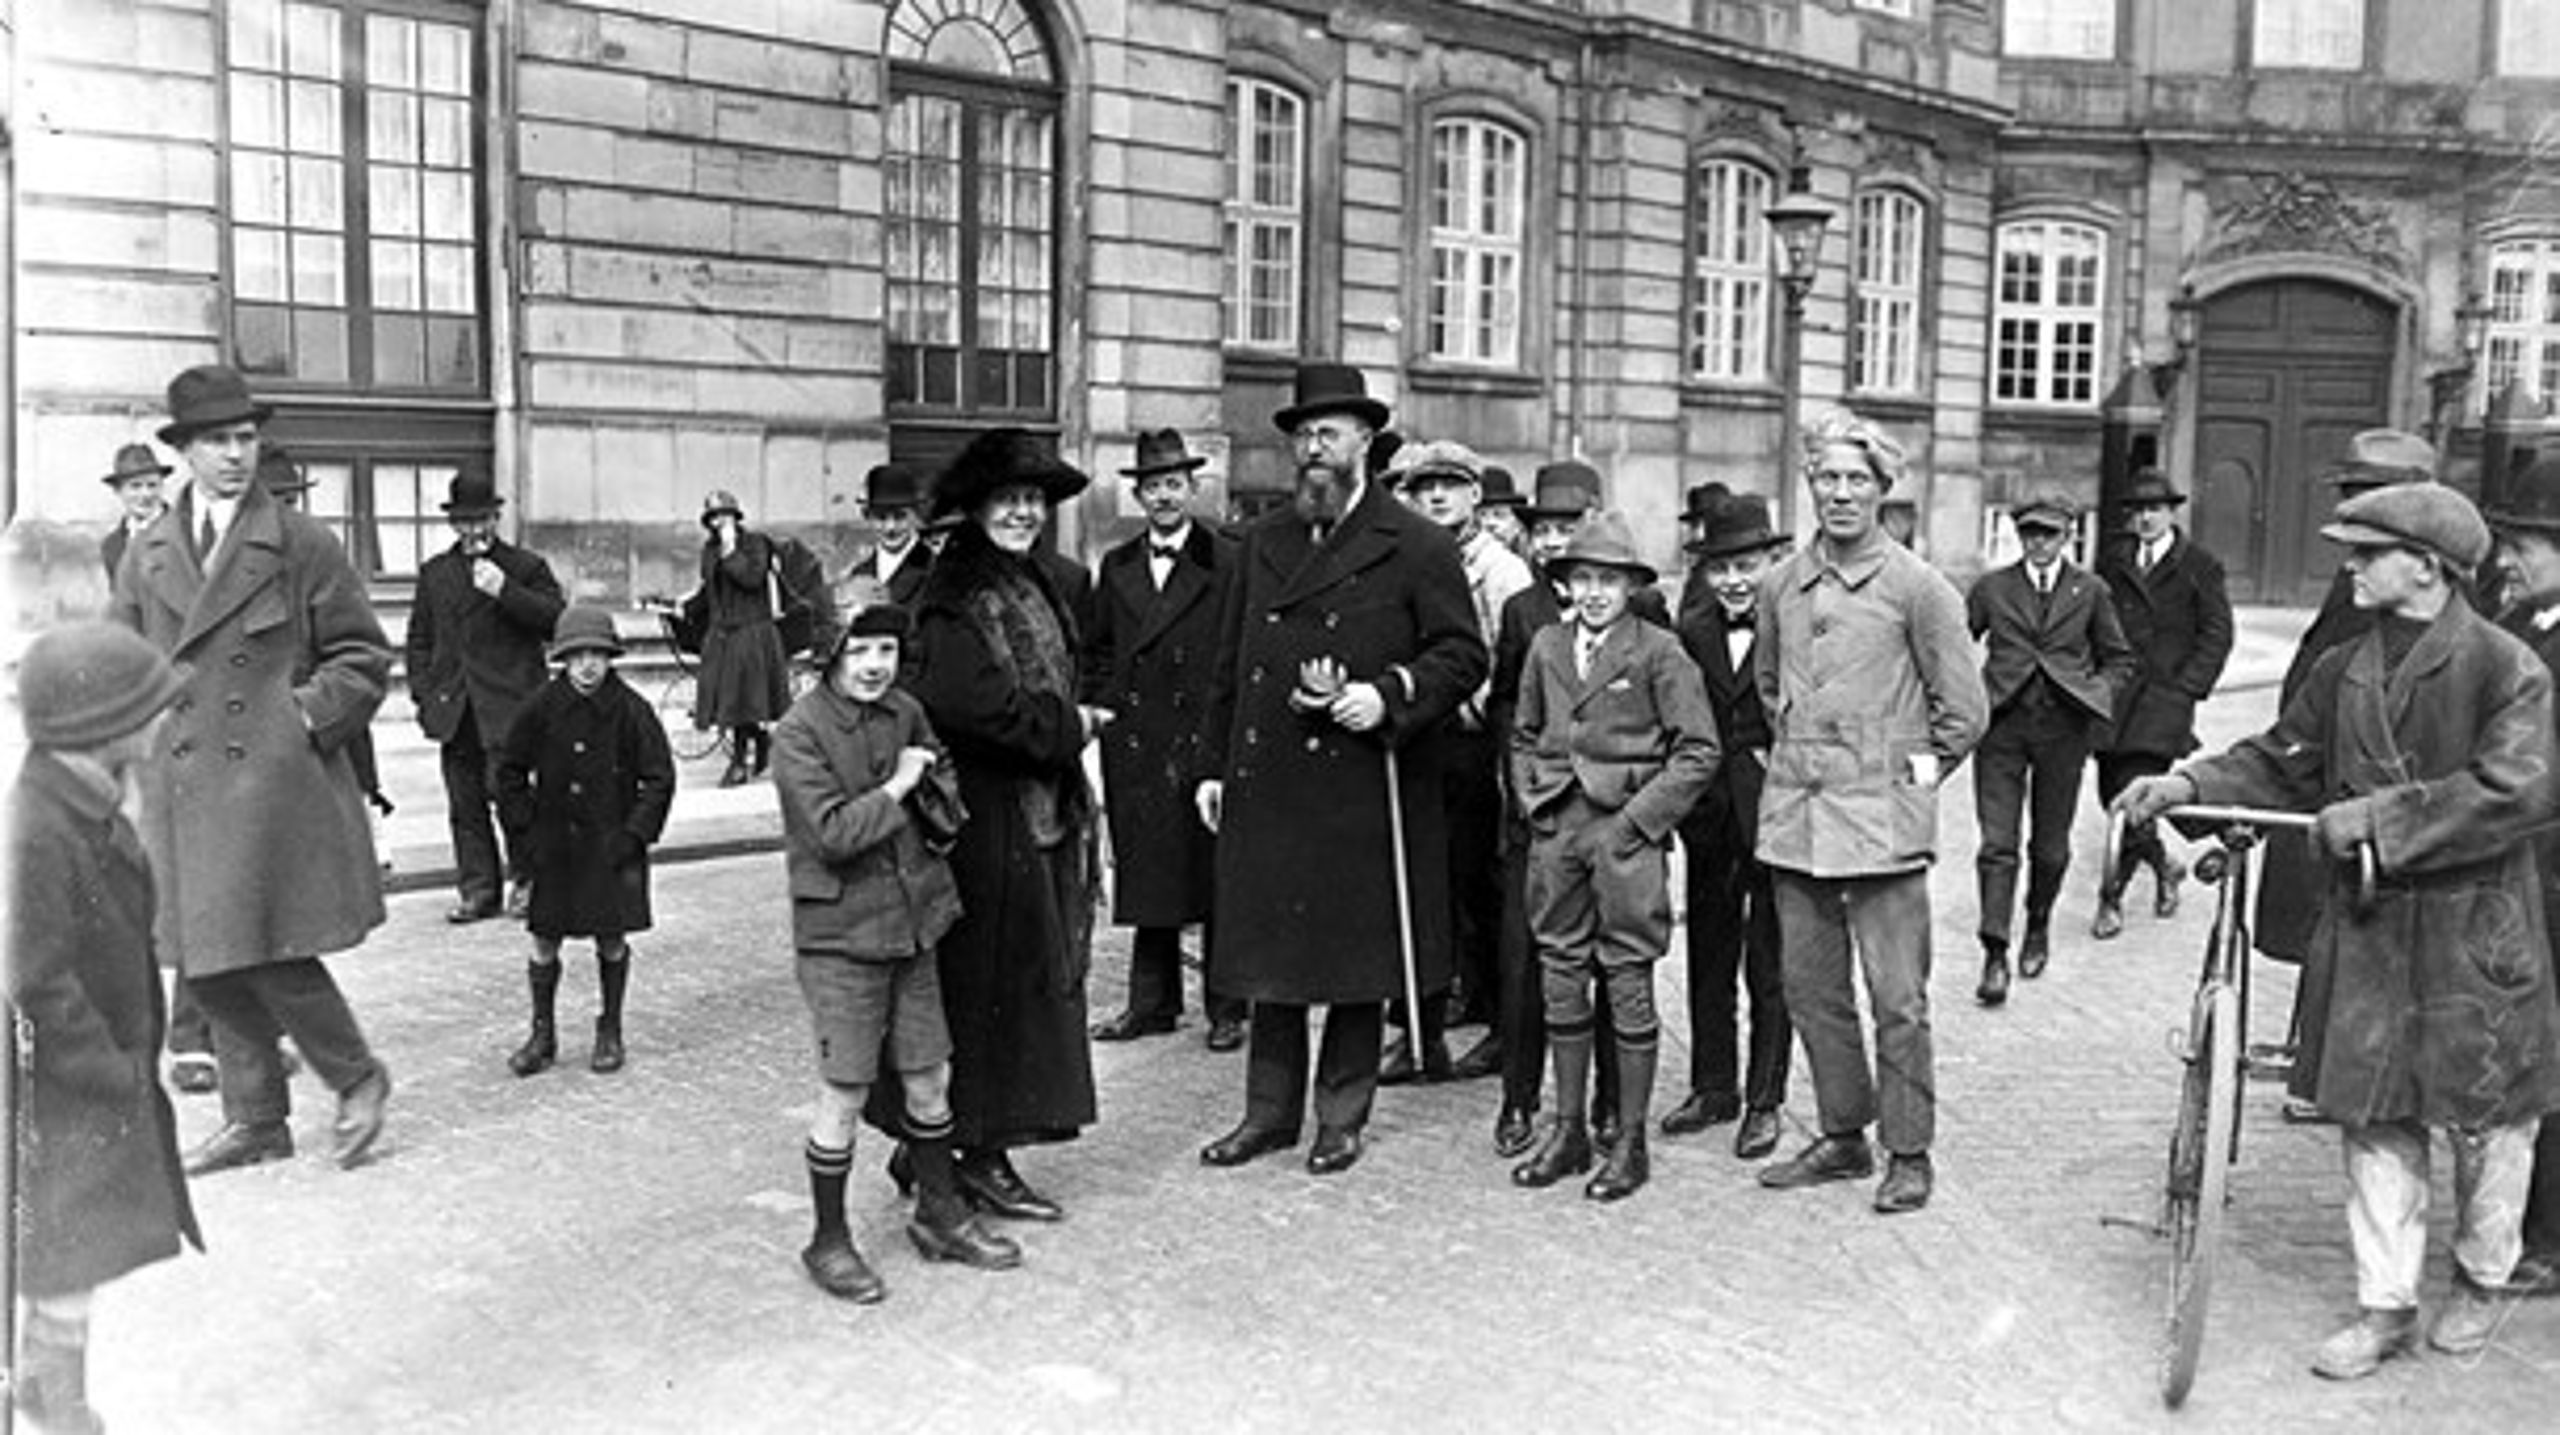 Socialdemokraten Thorvald Stauning var med til at udbygge Statsministeriet i 1930'erne. Her ses han&nbsp;fotograferet på Amalieborg Slotsplads i 1924 på vej til kongen for at danne regering.